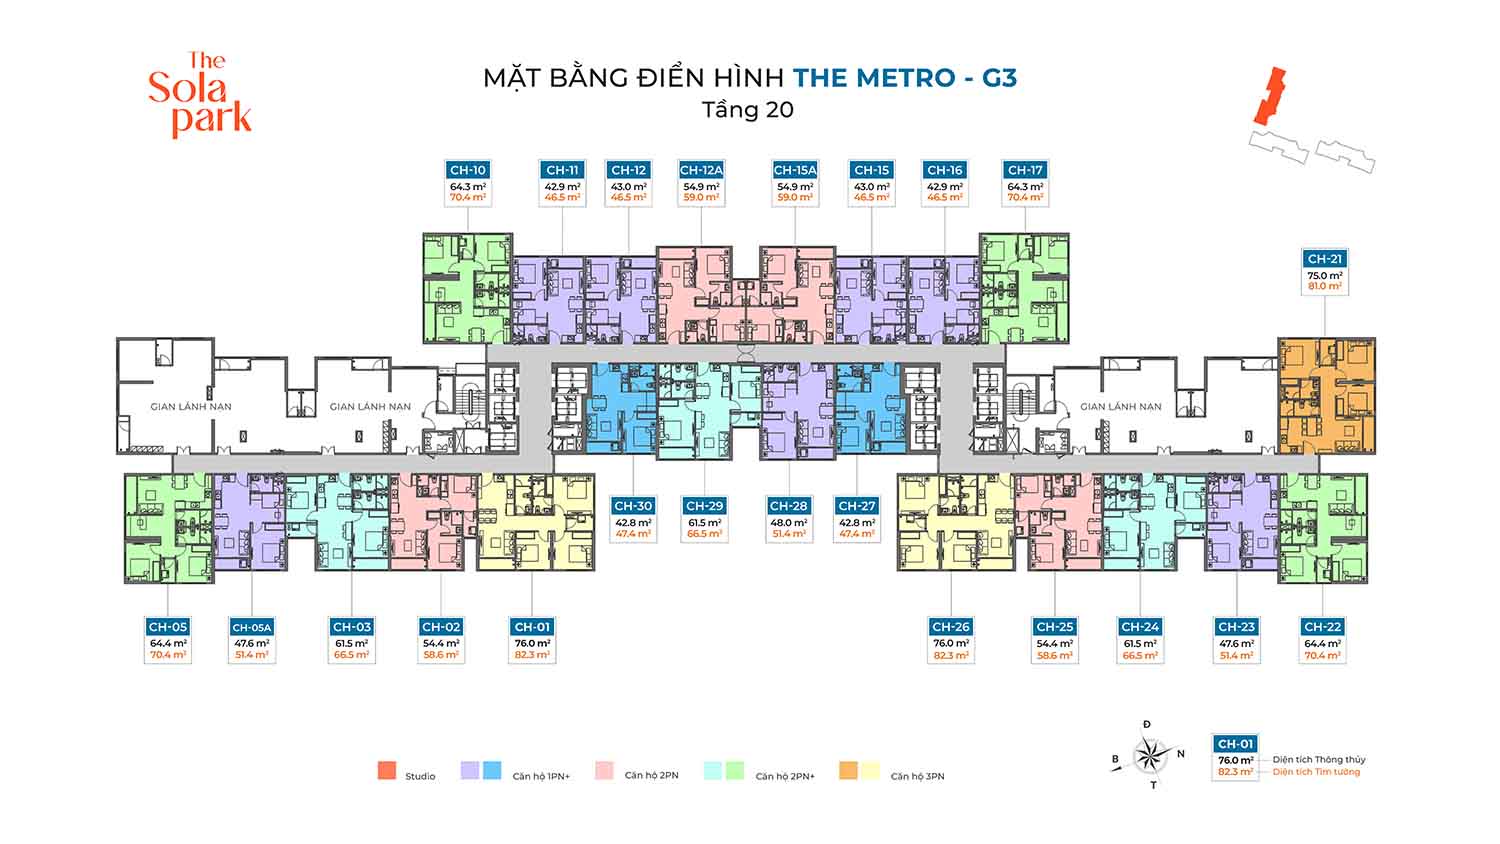 G3-the-Metro-mat-bang-tang-dien-hinh-tang-20-Imperia-Smart-City-2-The-Sola-Park-W1500